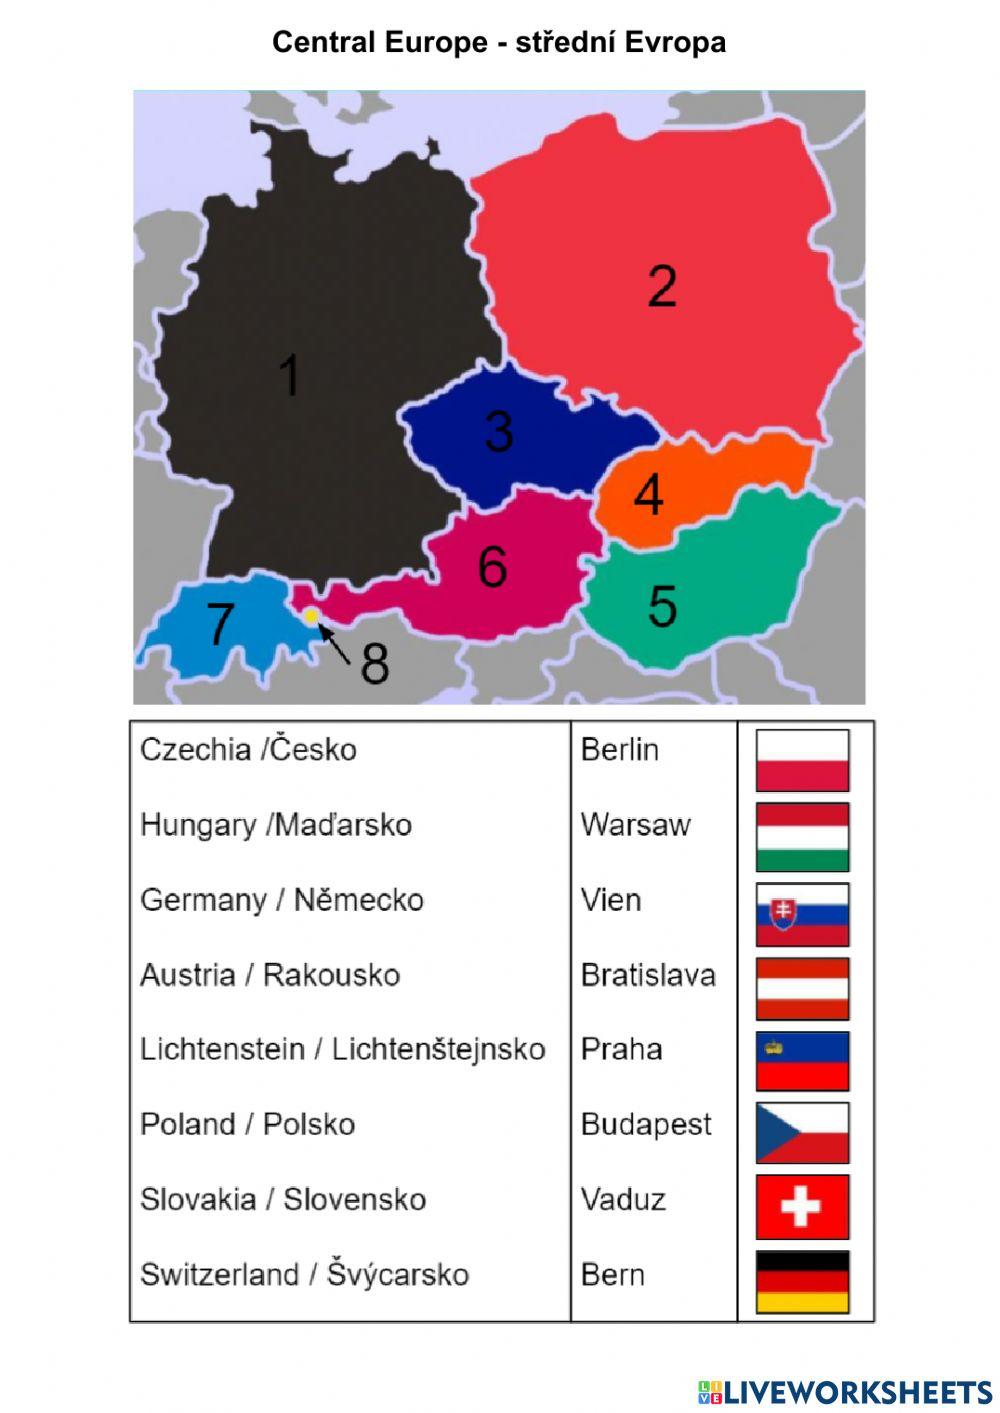 Central Europe - Střední Evropa